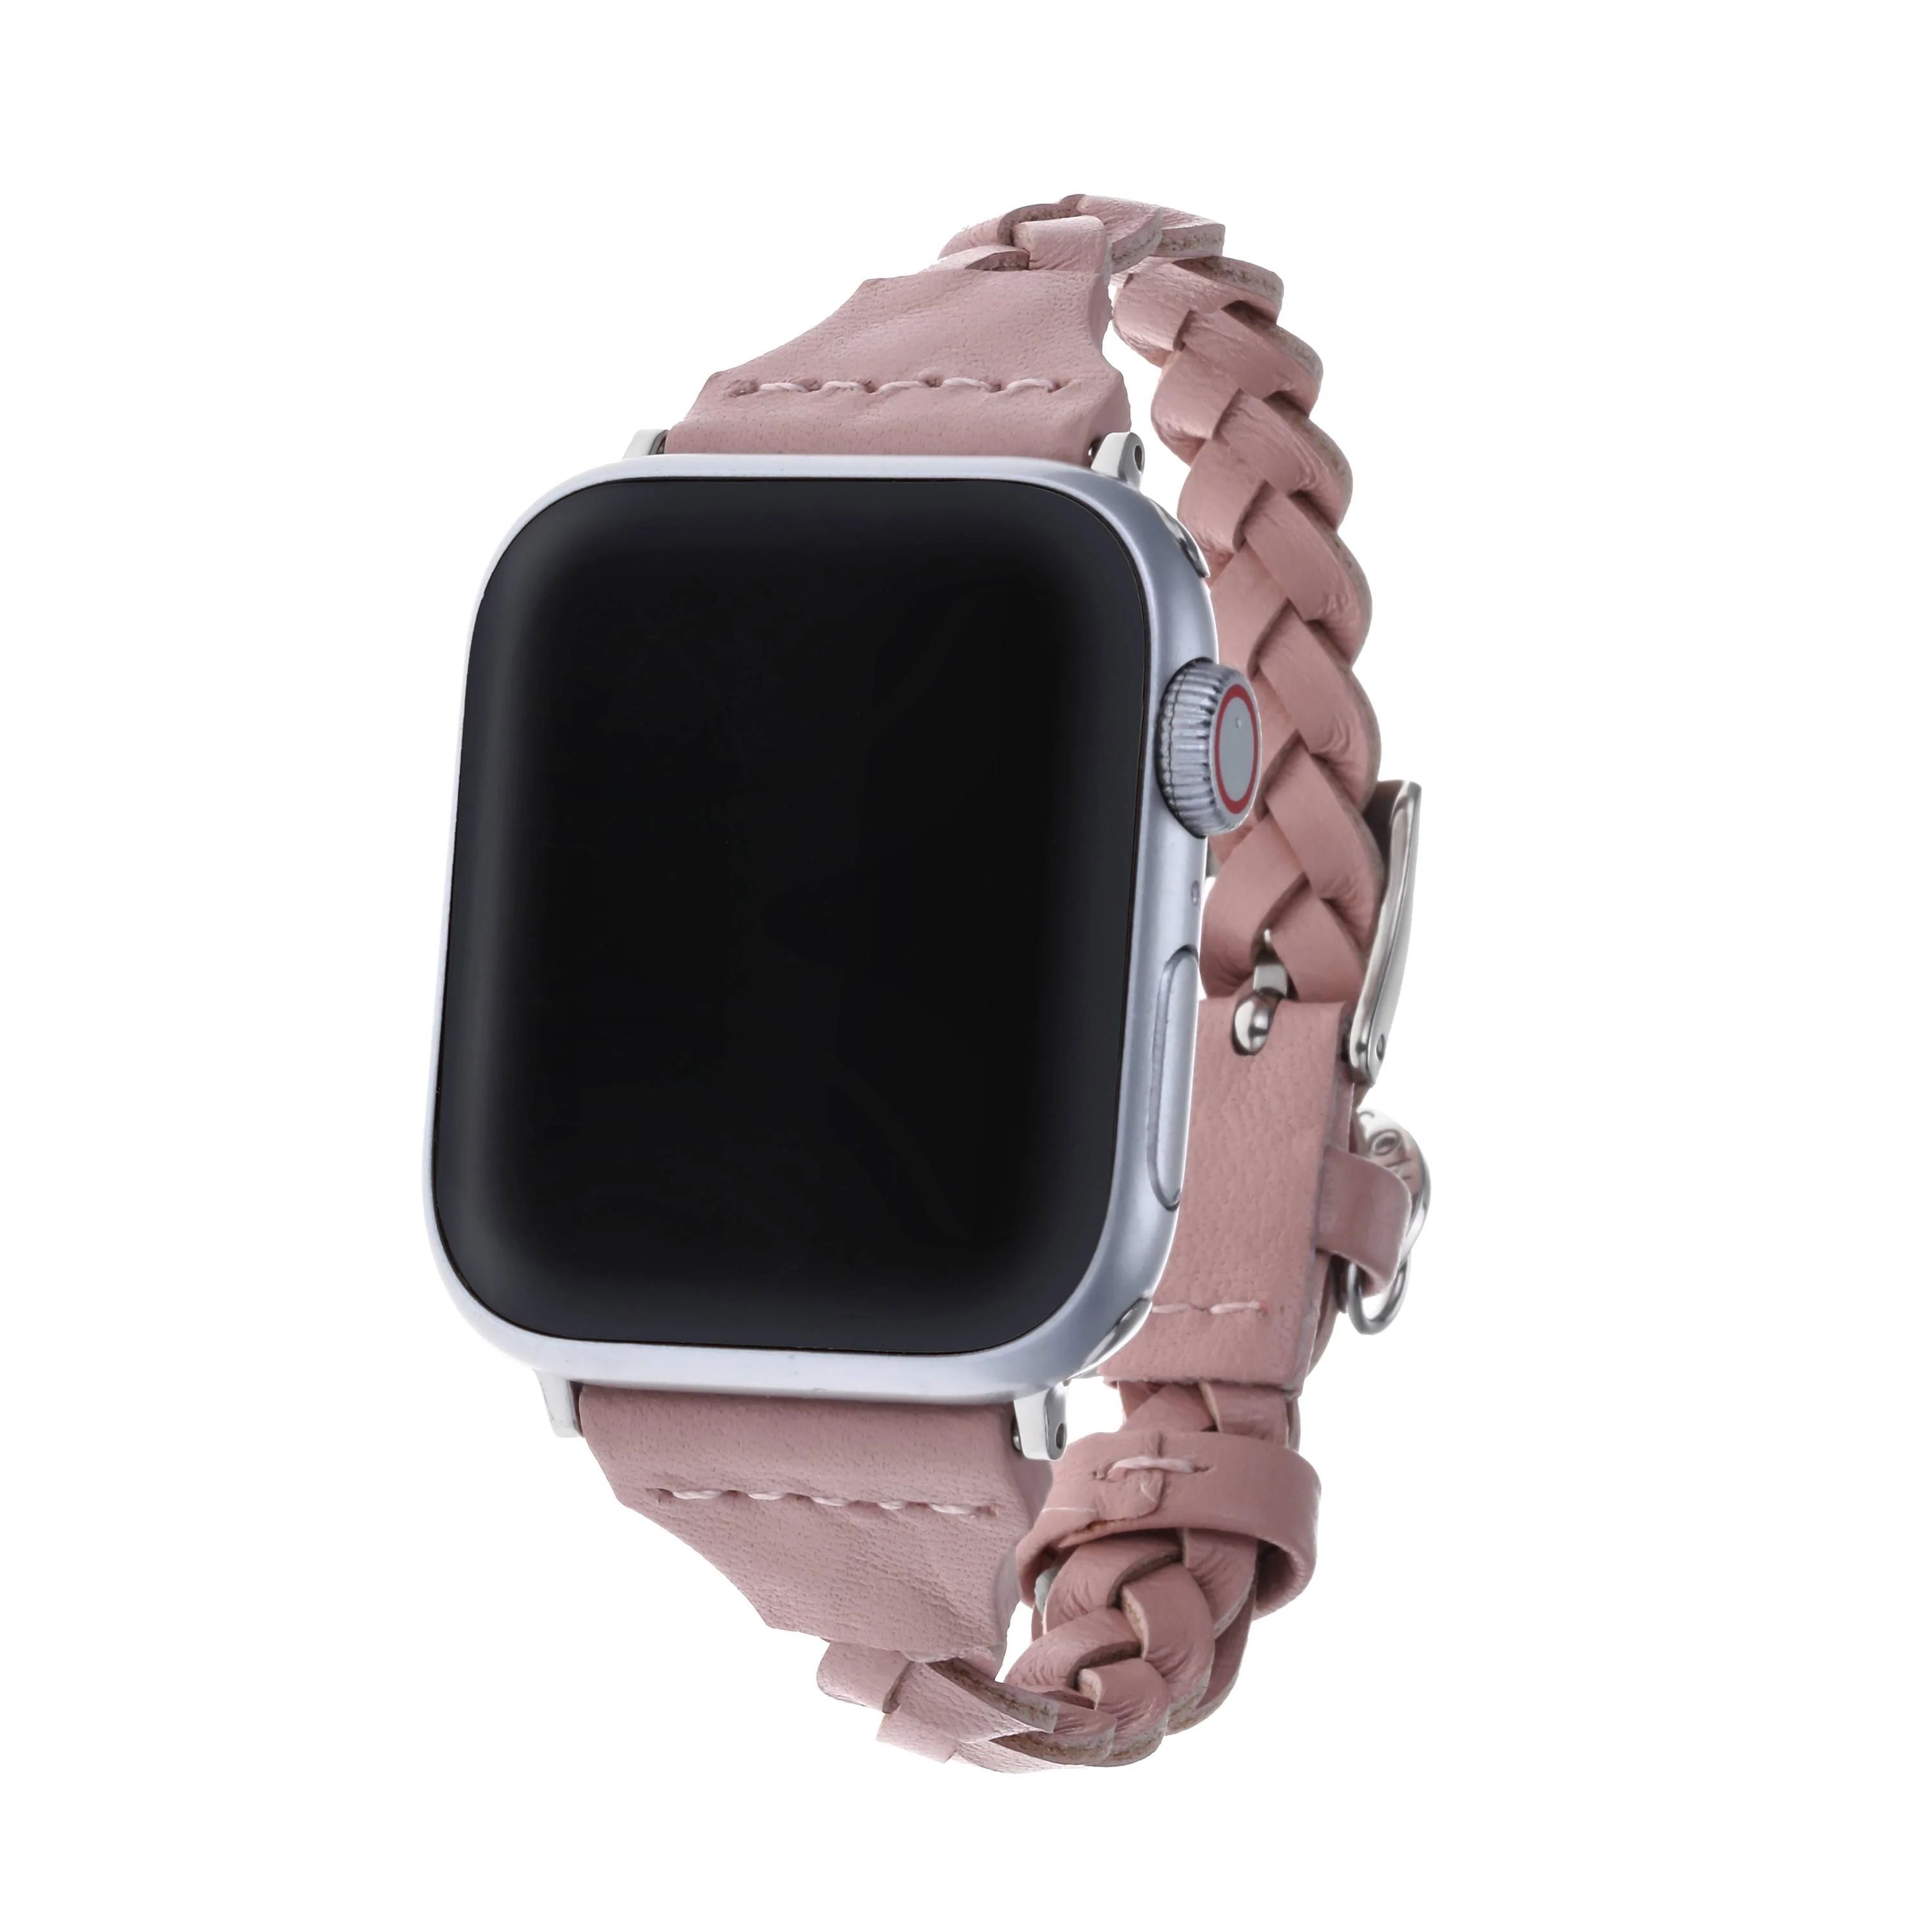 Braided Apple Watch Strap - Pink | Victoria Emerson